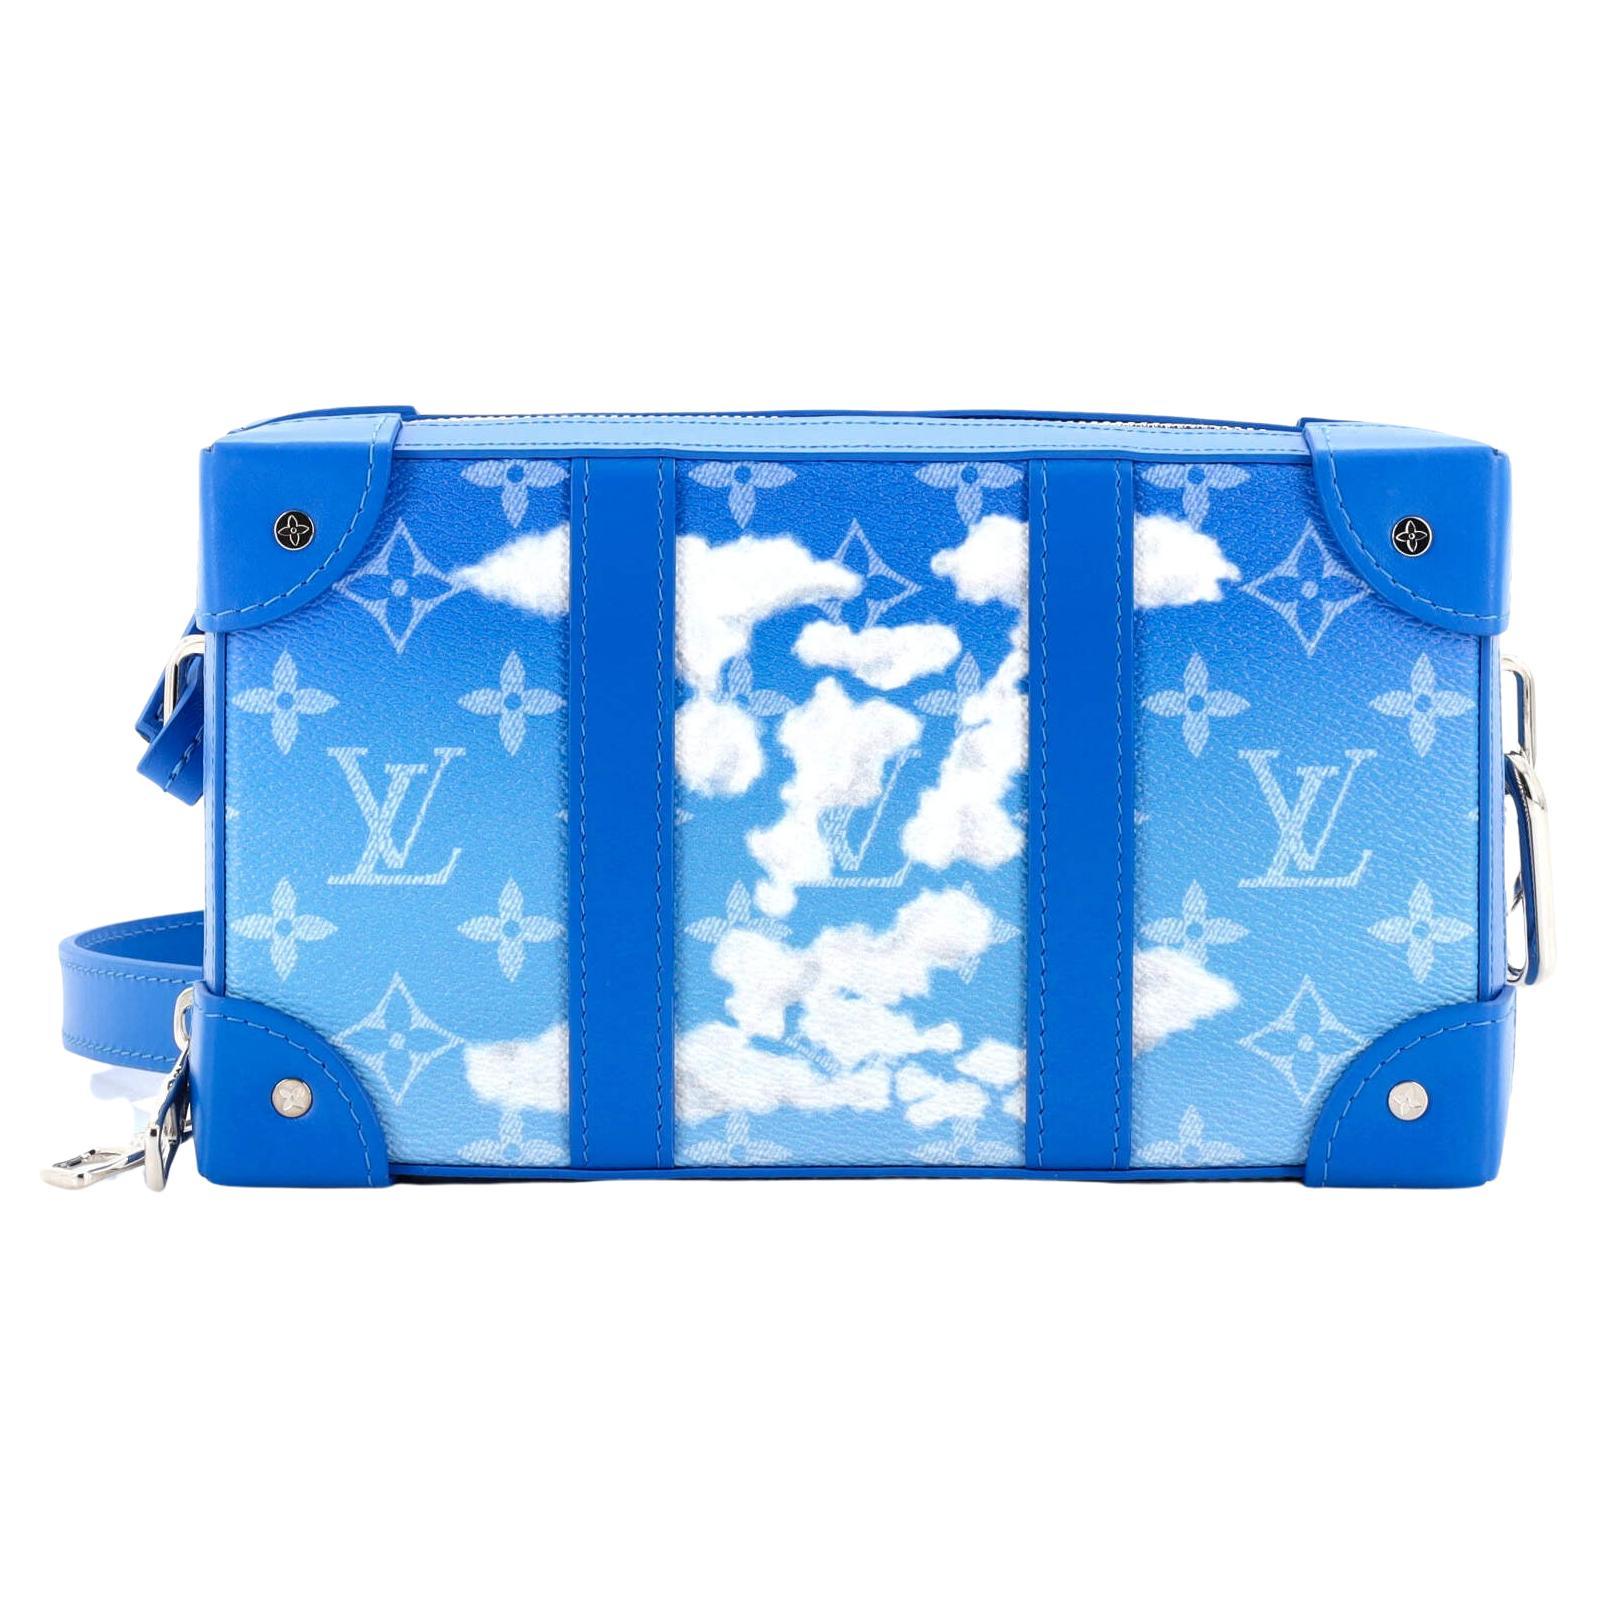 Louis Vuitton Slender Wallet Clouds Monogram Blue for Men